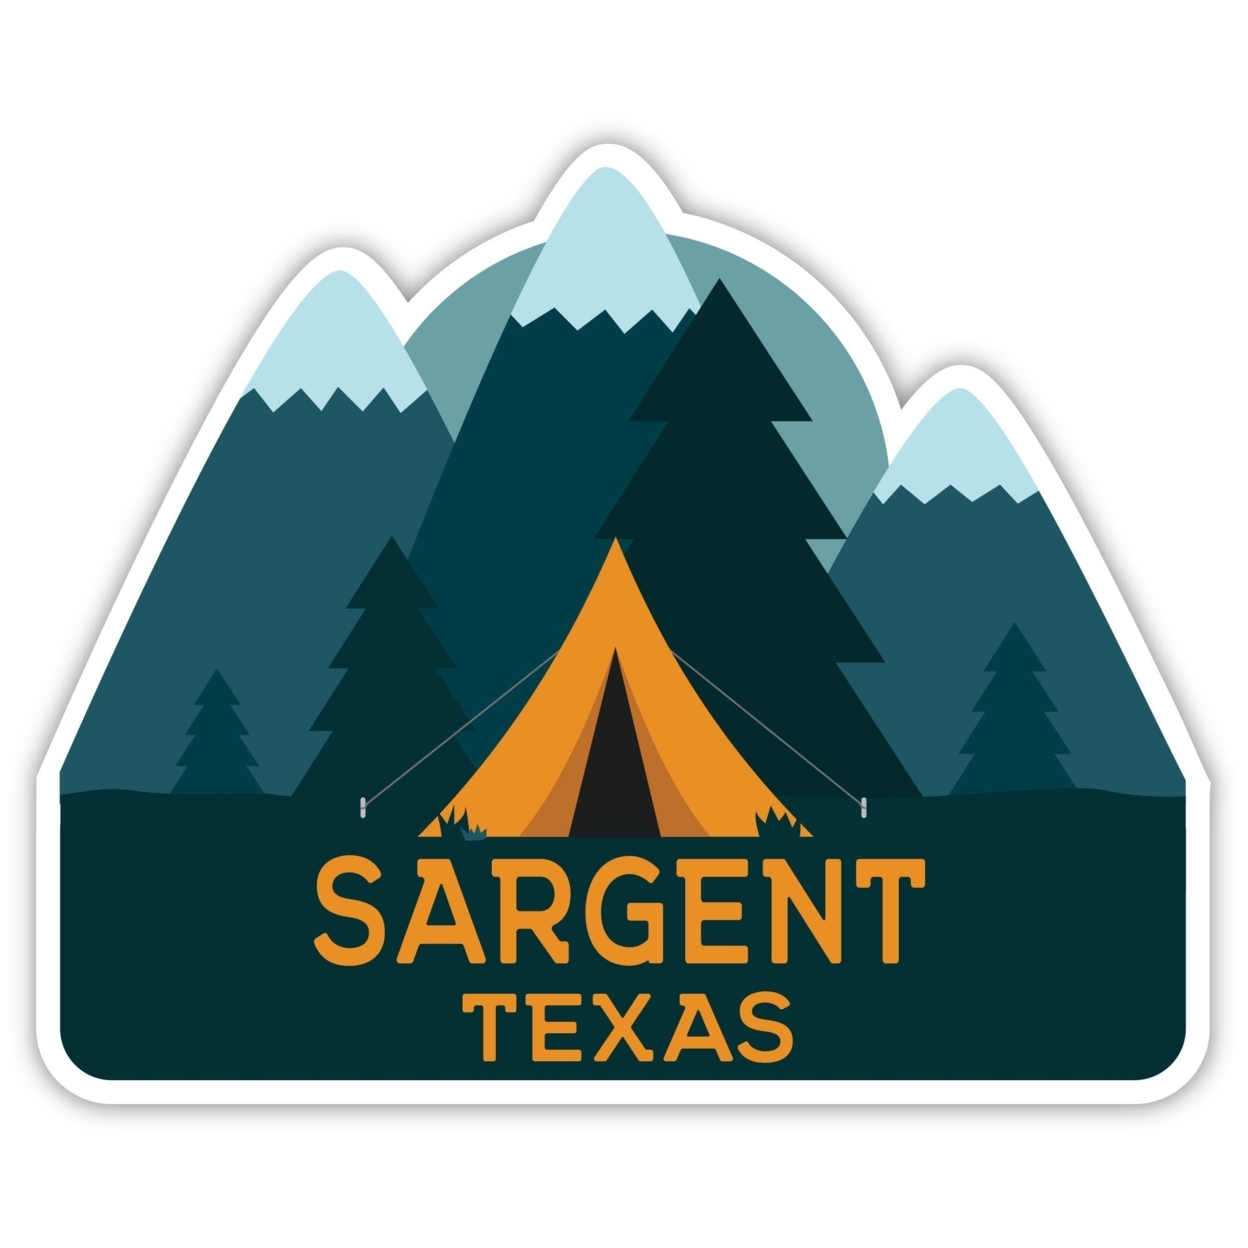 Sargent Texas Souvenir Decorative Stickers (Choose Theme And Size) - Single Unit, 4-Inch, Tent